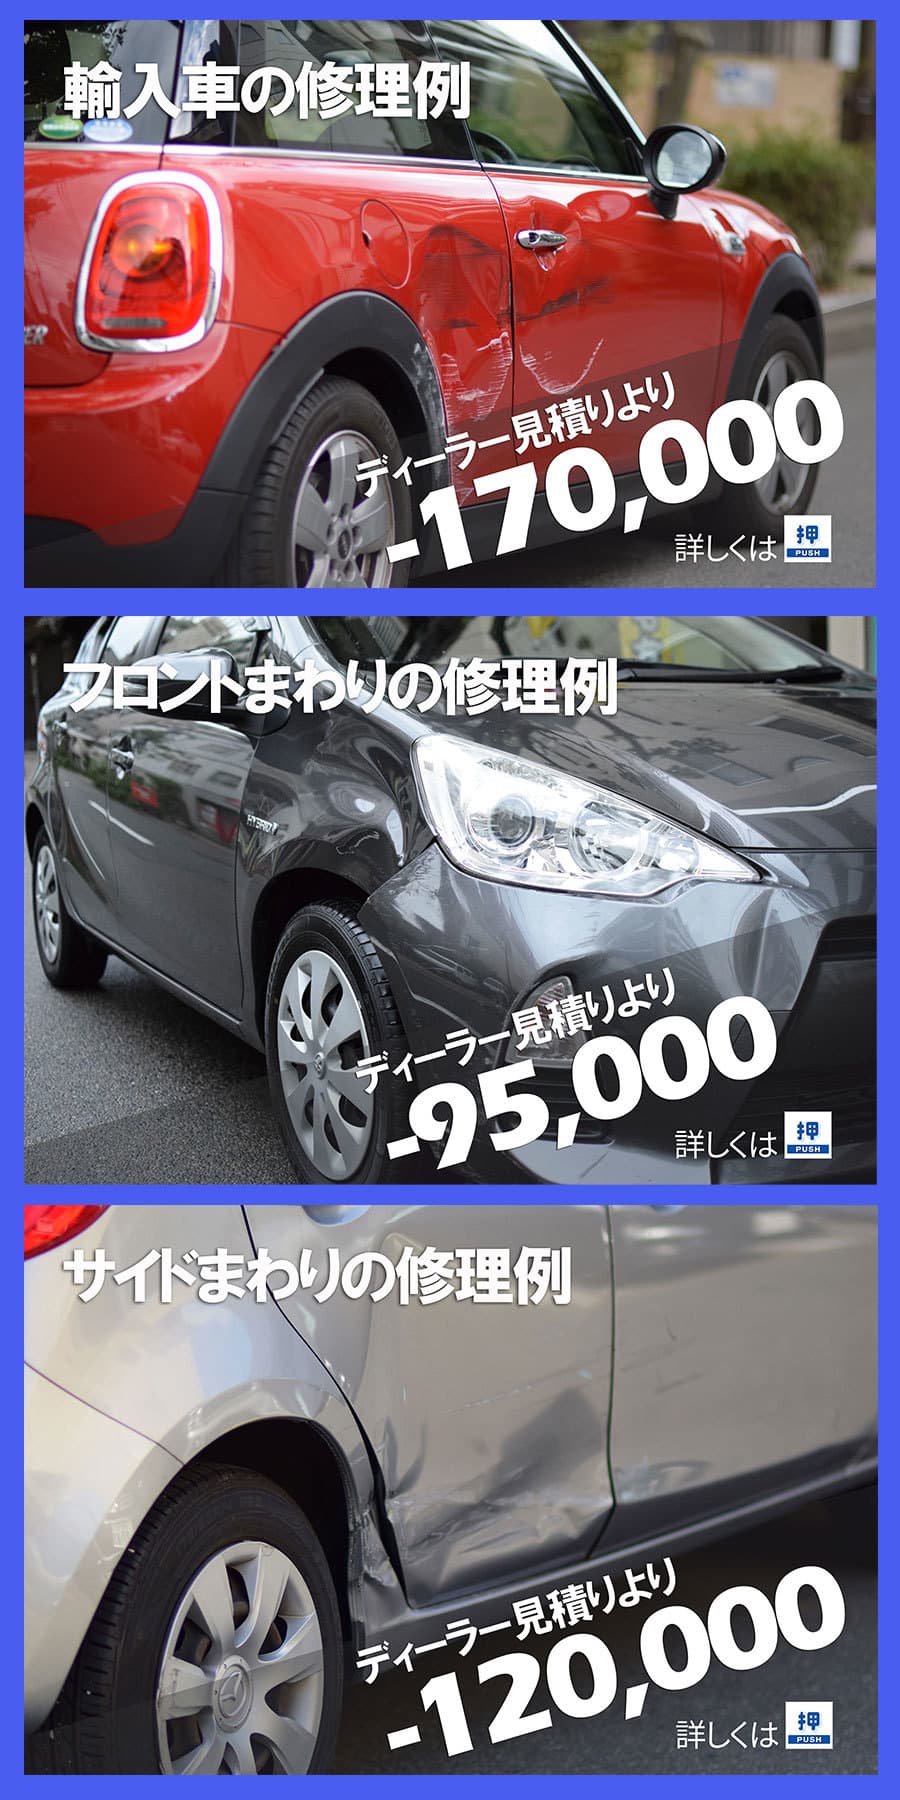 福岡で板金塗装 事故での自動車修理がどこよりも安くて丁寧がモットー